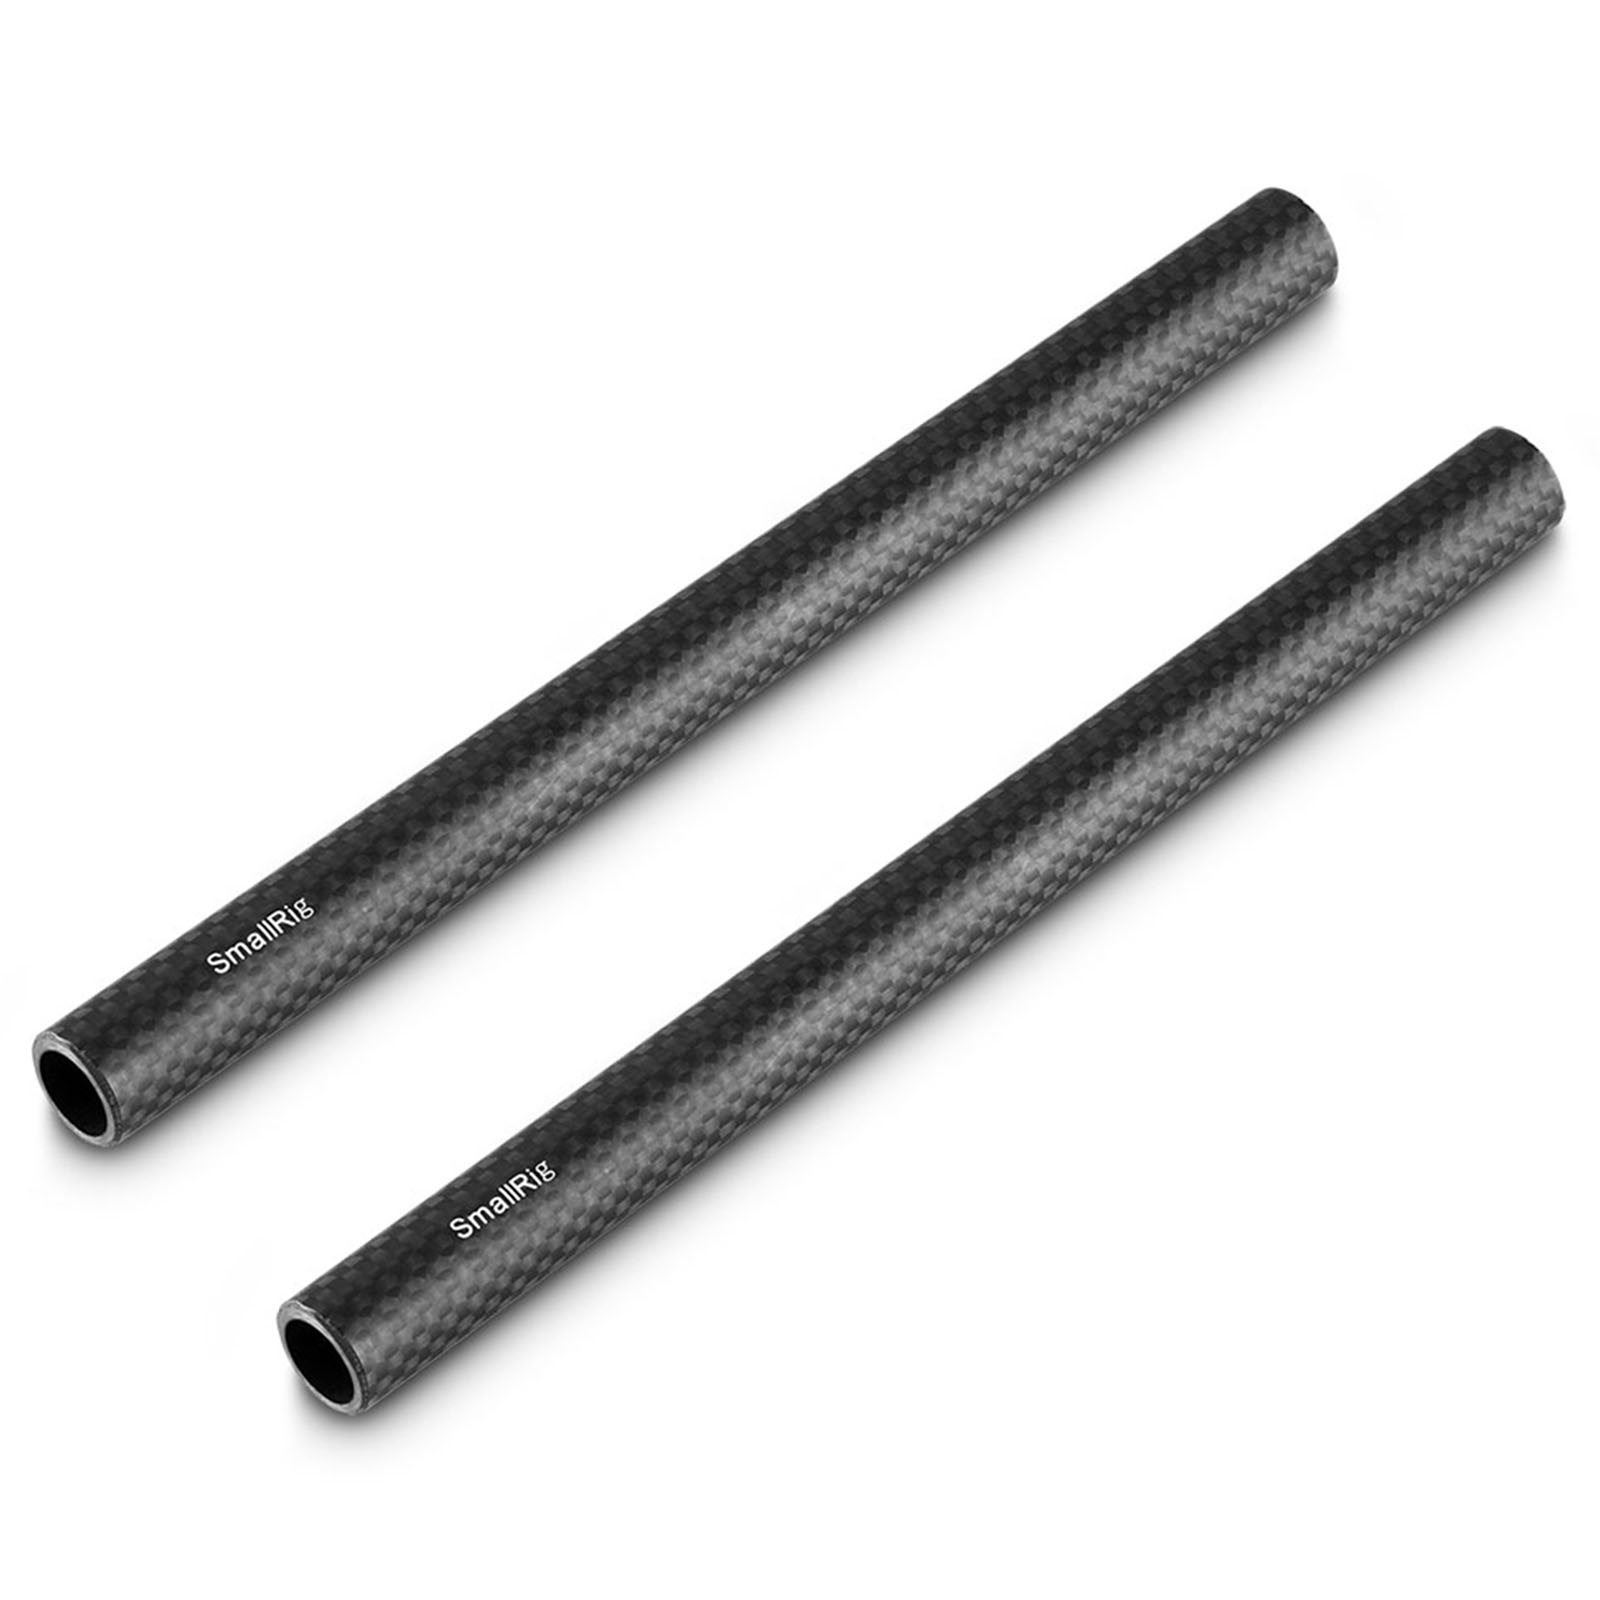 Image of SmallRig 15mm Carbon Fiber Rod 20cm 8 inch 2pcs 870